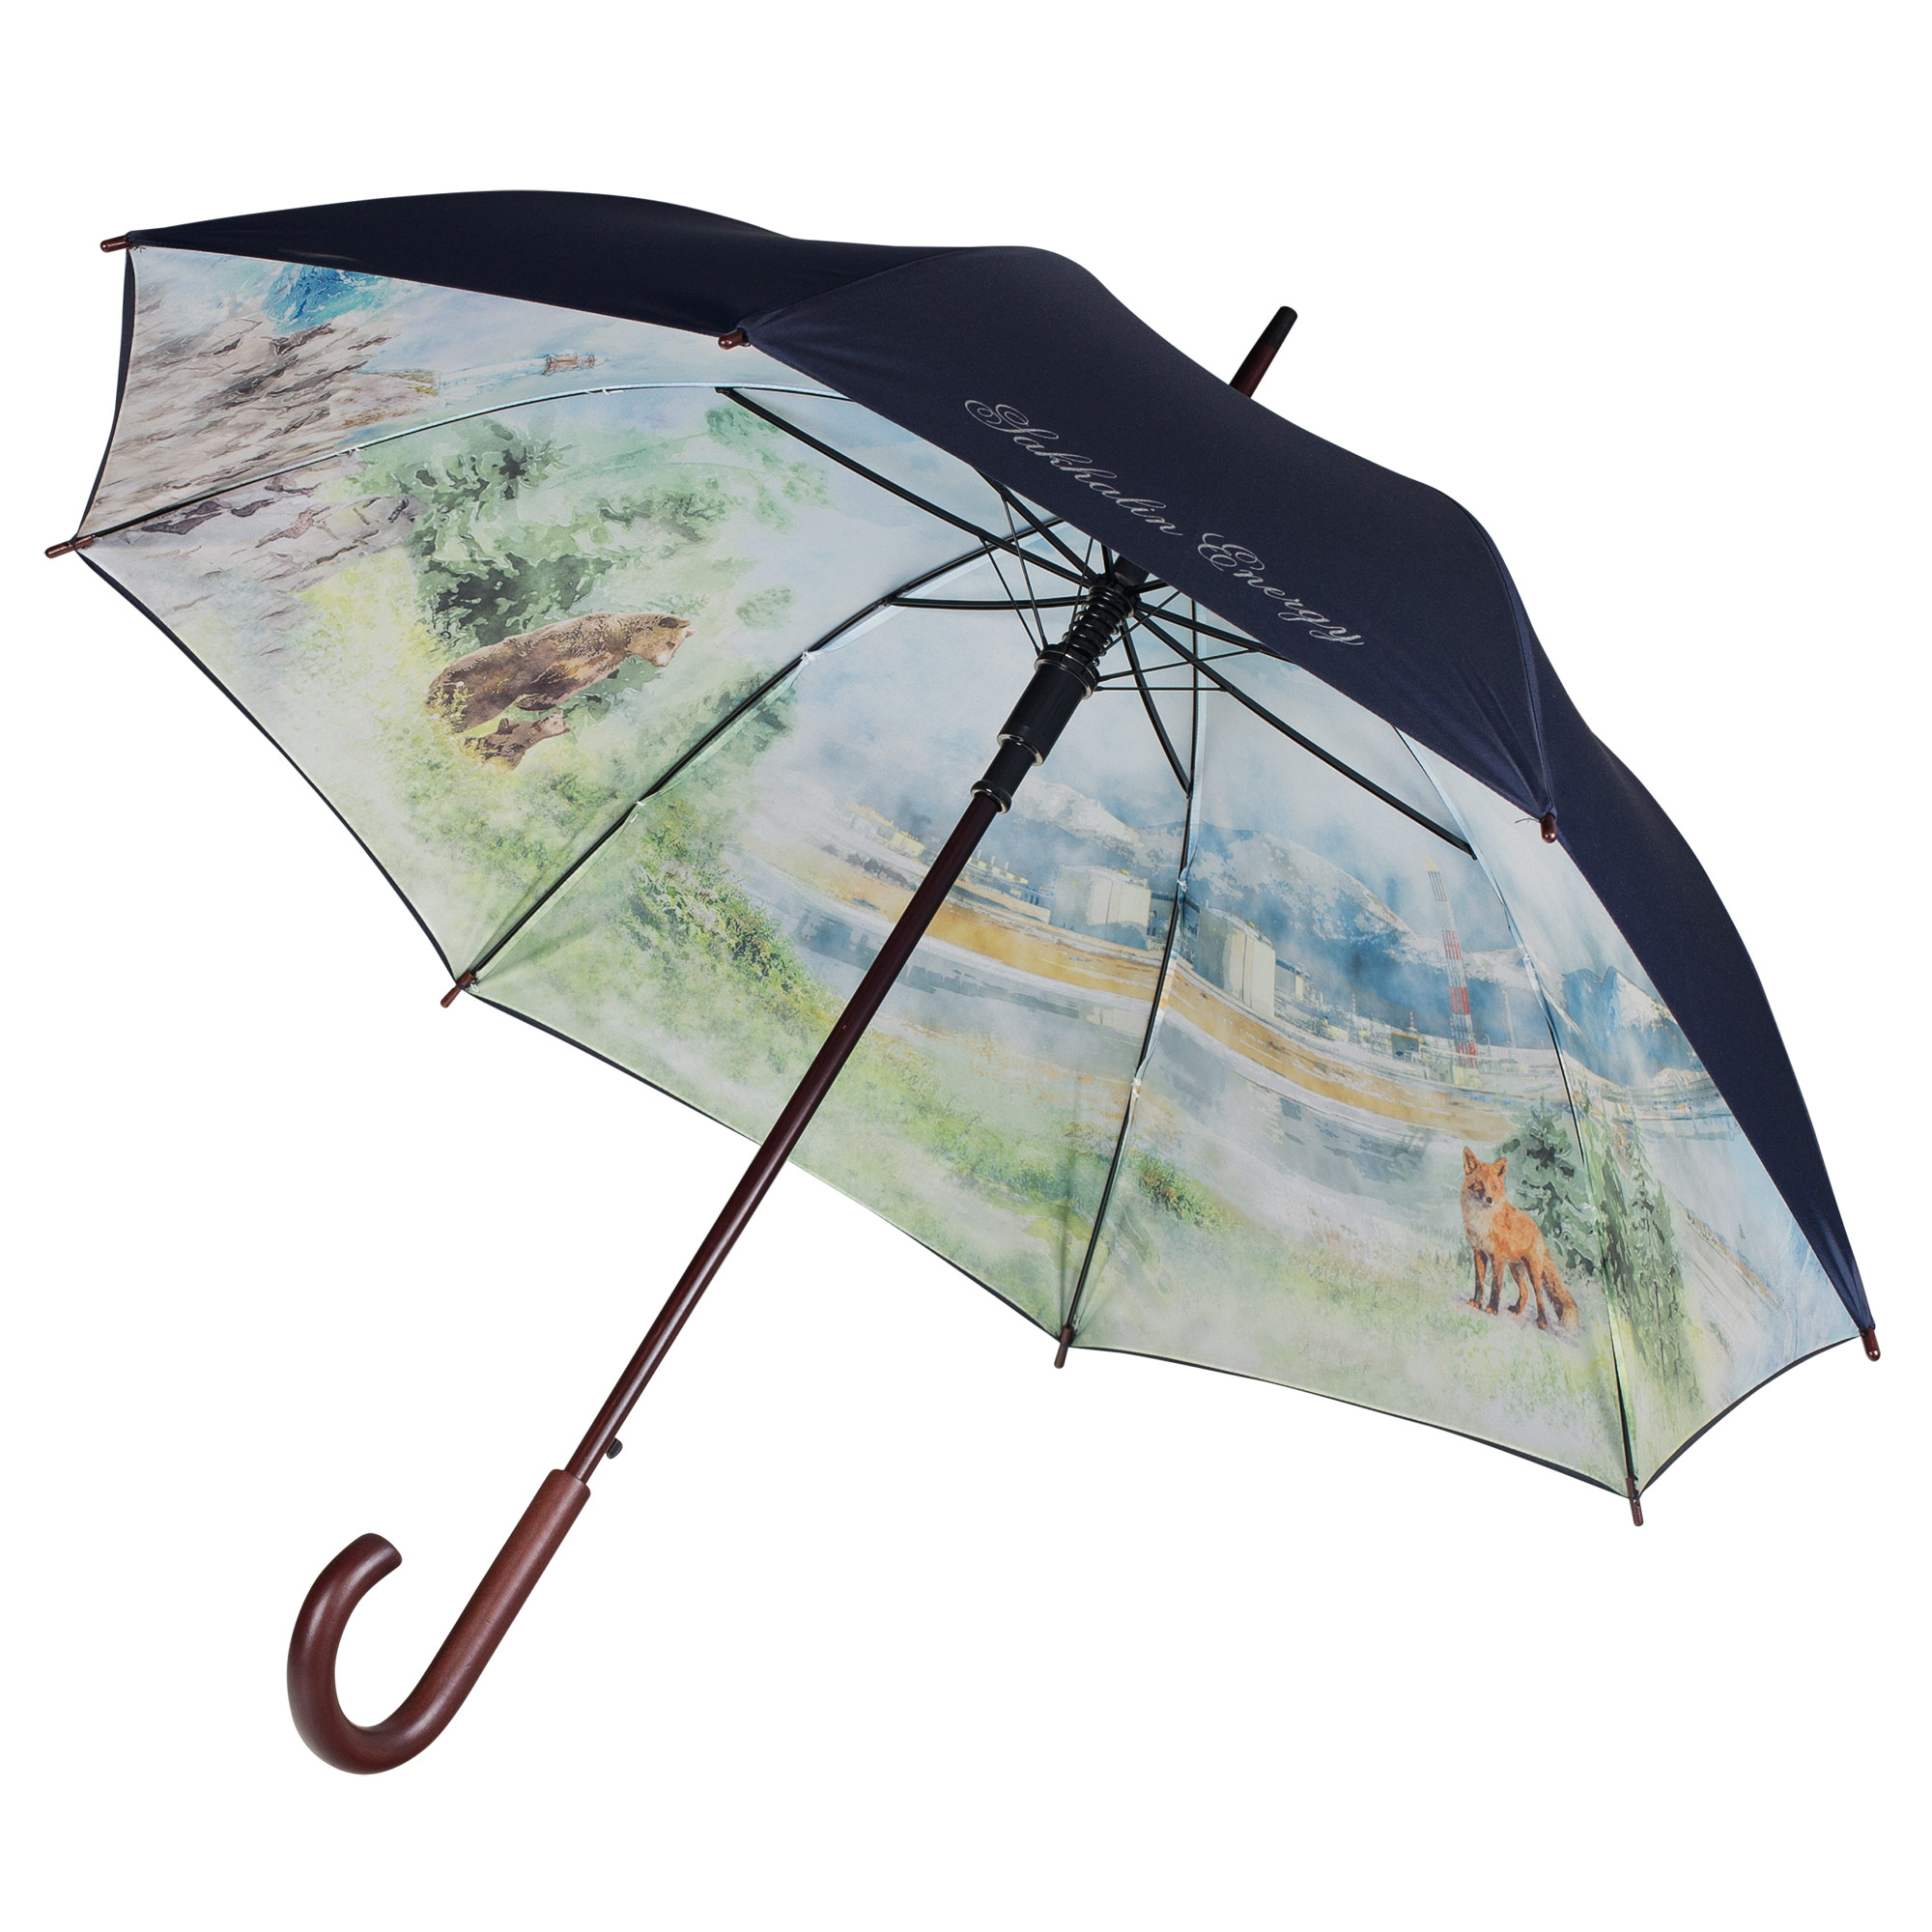 Пример складного зонта с печатью в 1 цвет